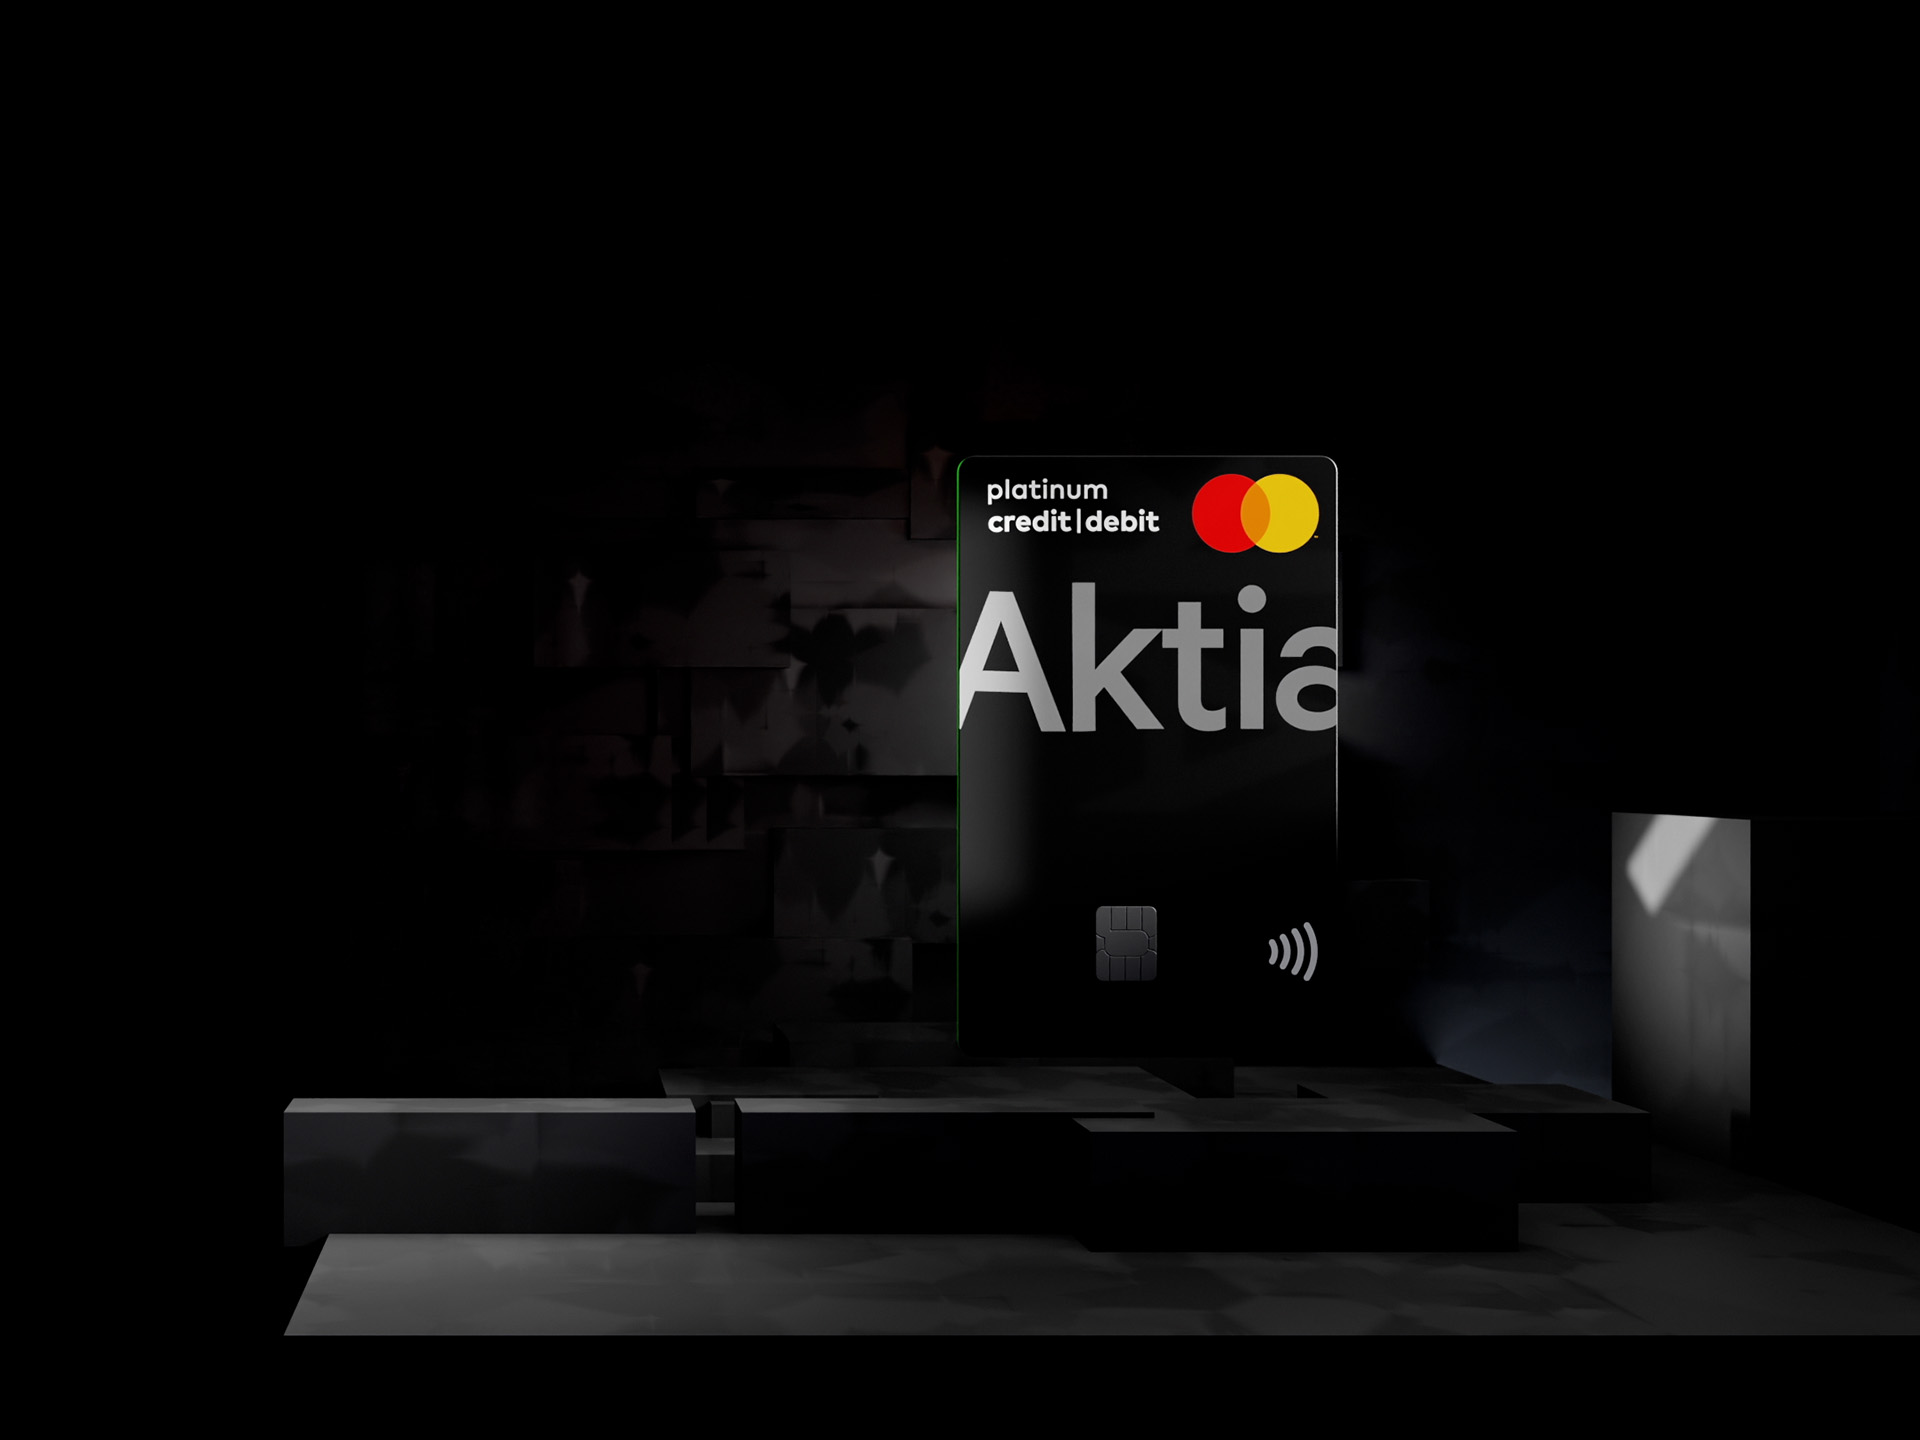 Aktia Platinum Credit/Debit